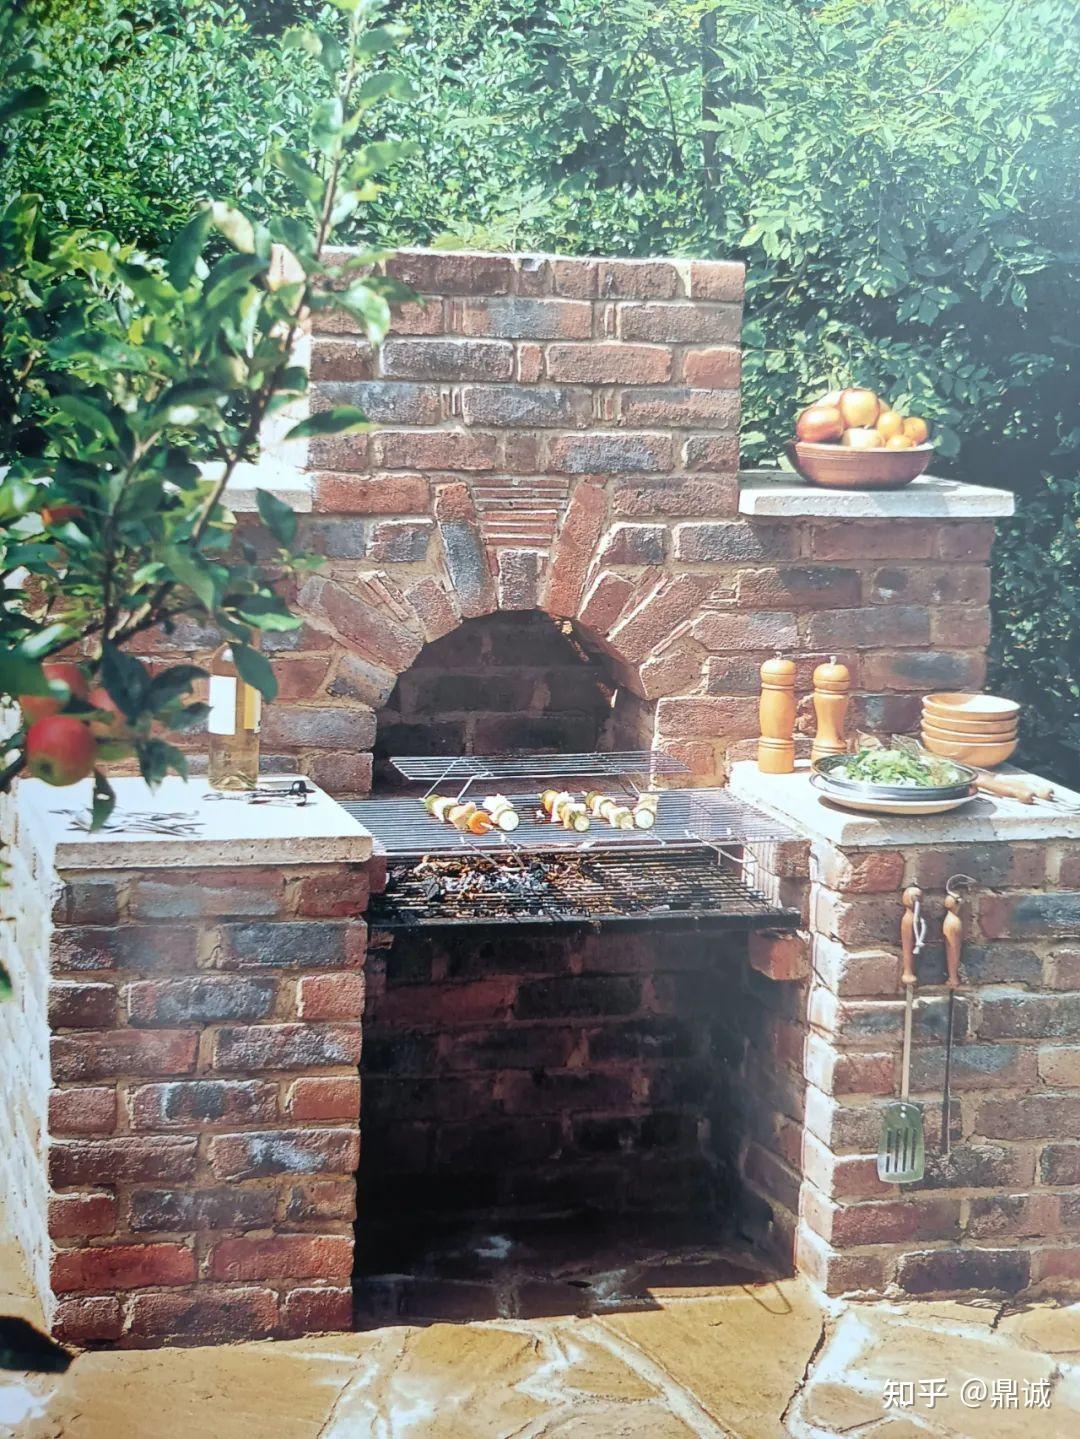 砖砌烧烤炉在美观性和独特性方面完胜其他任何形式烤炉,对于喜爱户外